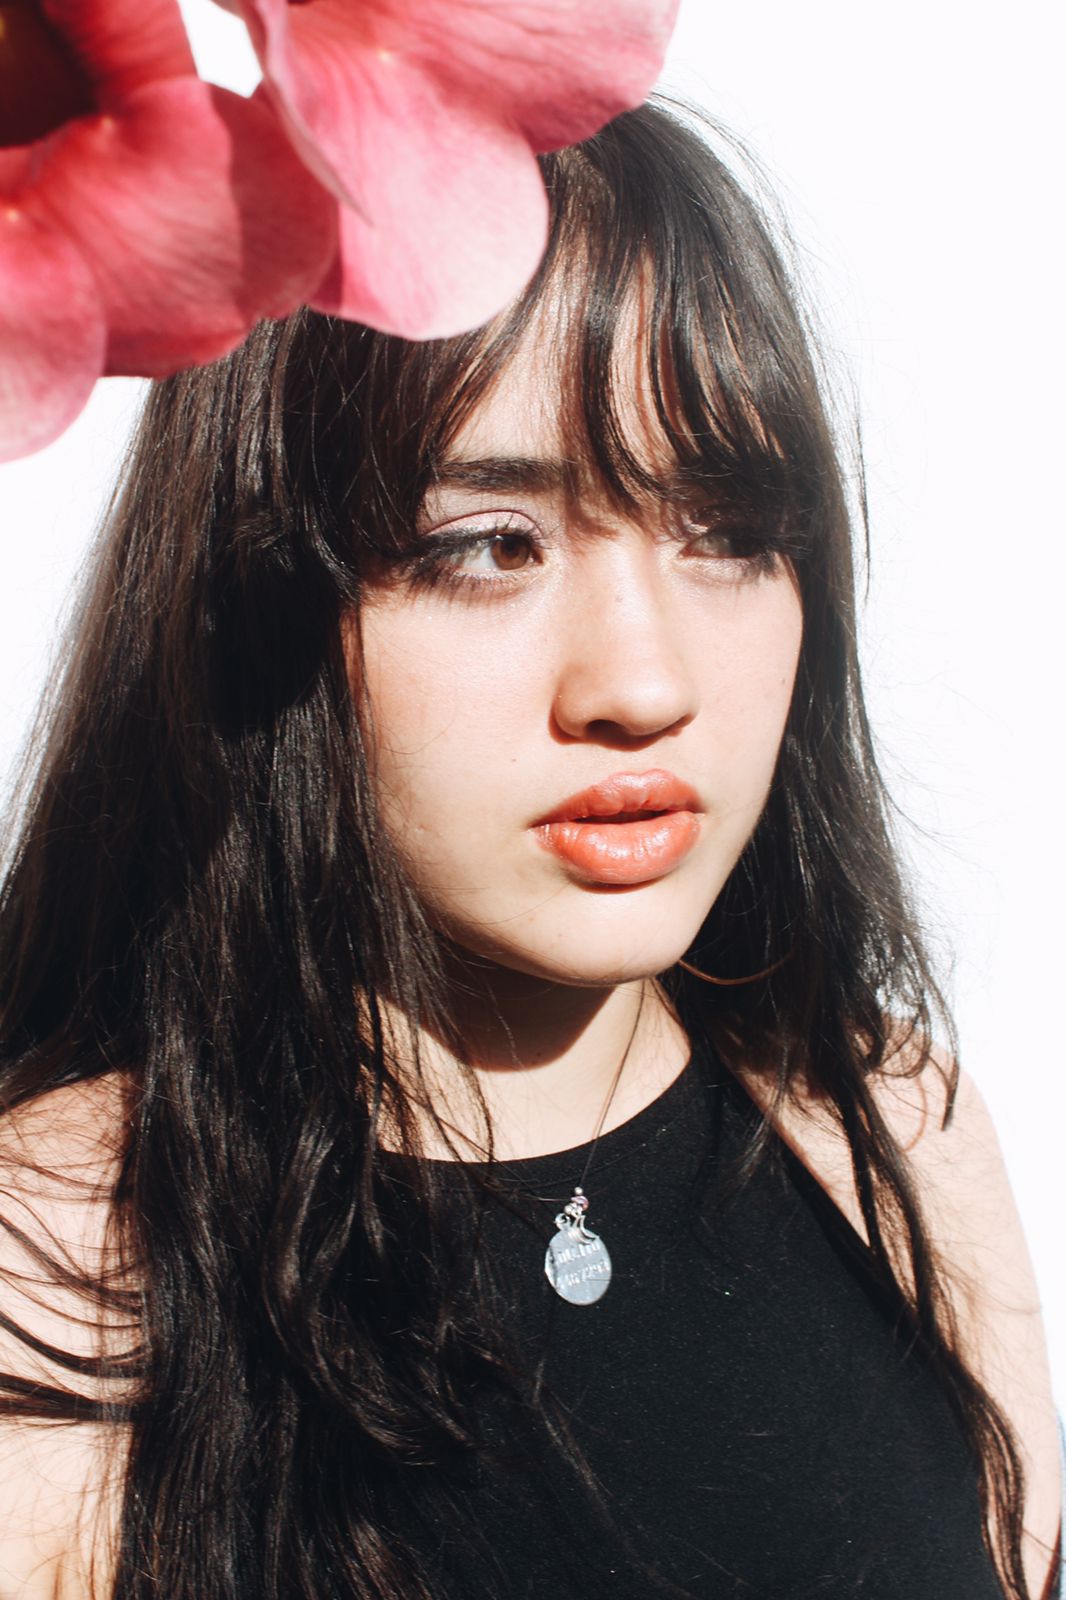 Elisa Tokeshi: “La música para mí es una forma de sacar mis emociones y comunicarme”